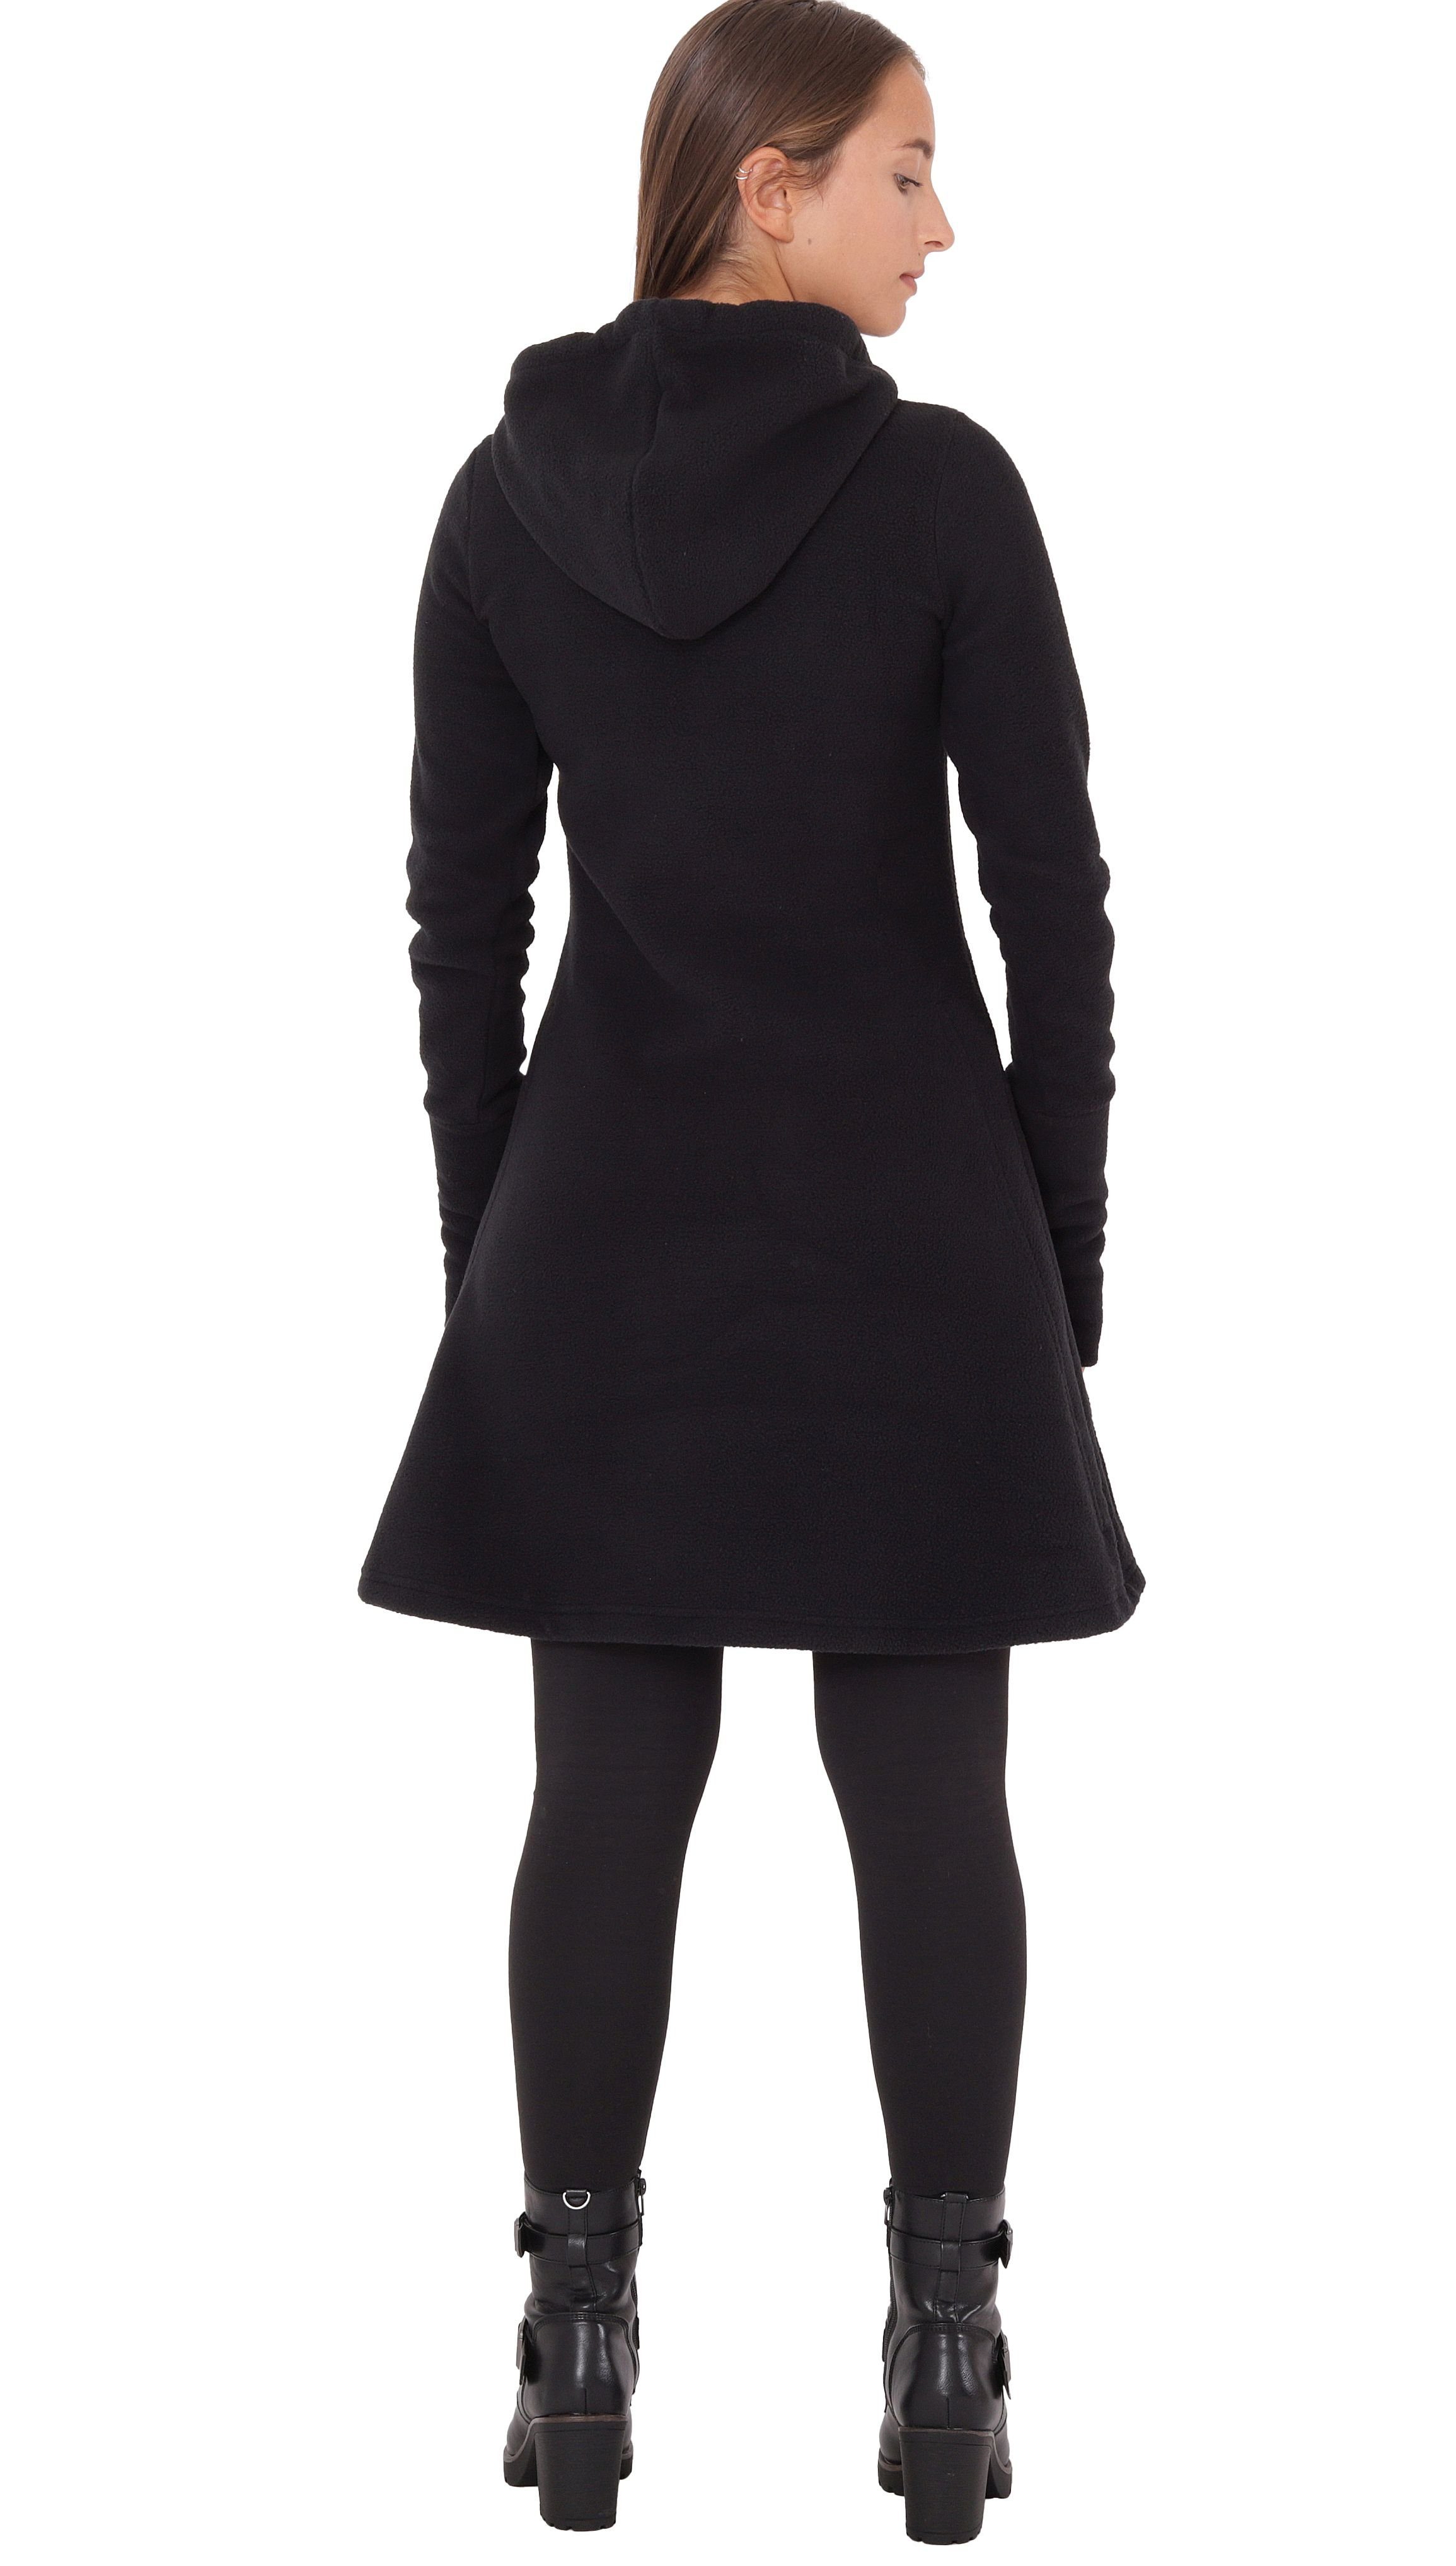 PUREWONDER A-Linien-Kleid Kapuzenkleid Winterkleid mit Traumfänger Schwarz dr31 Fleece